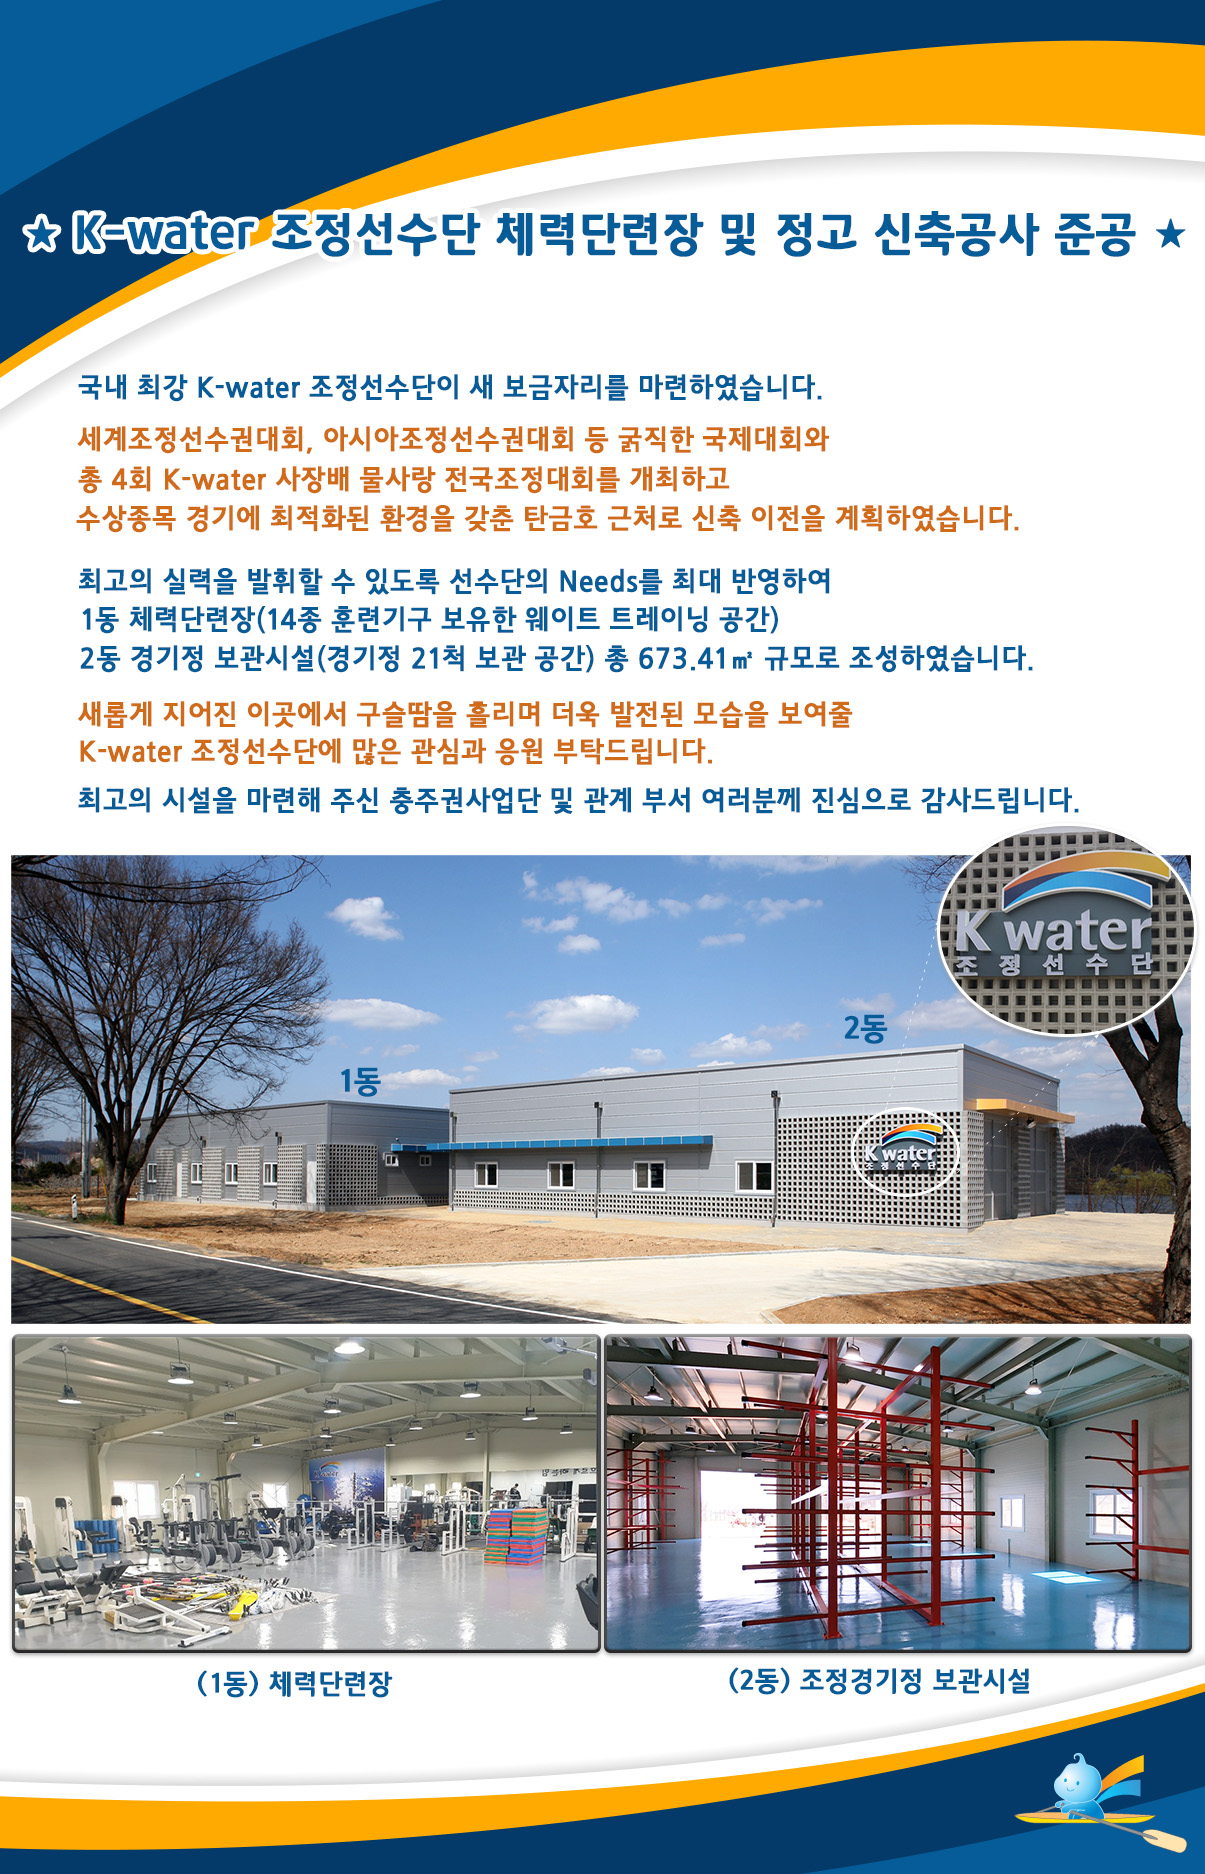 K-water 조정선수단 체력단련장 및 정고 신축공사 준공